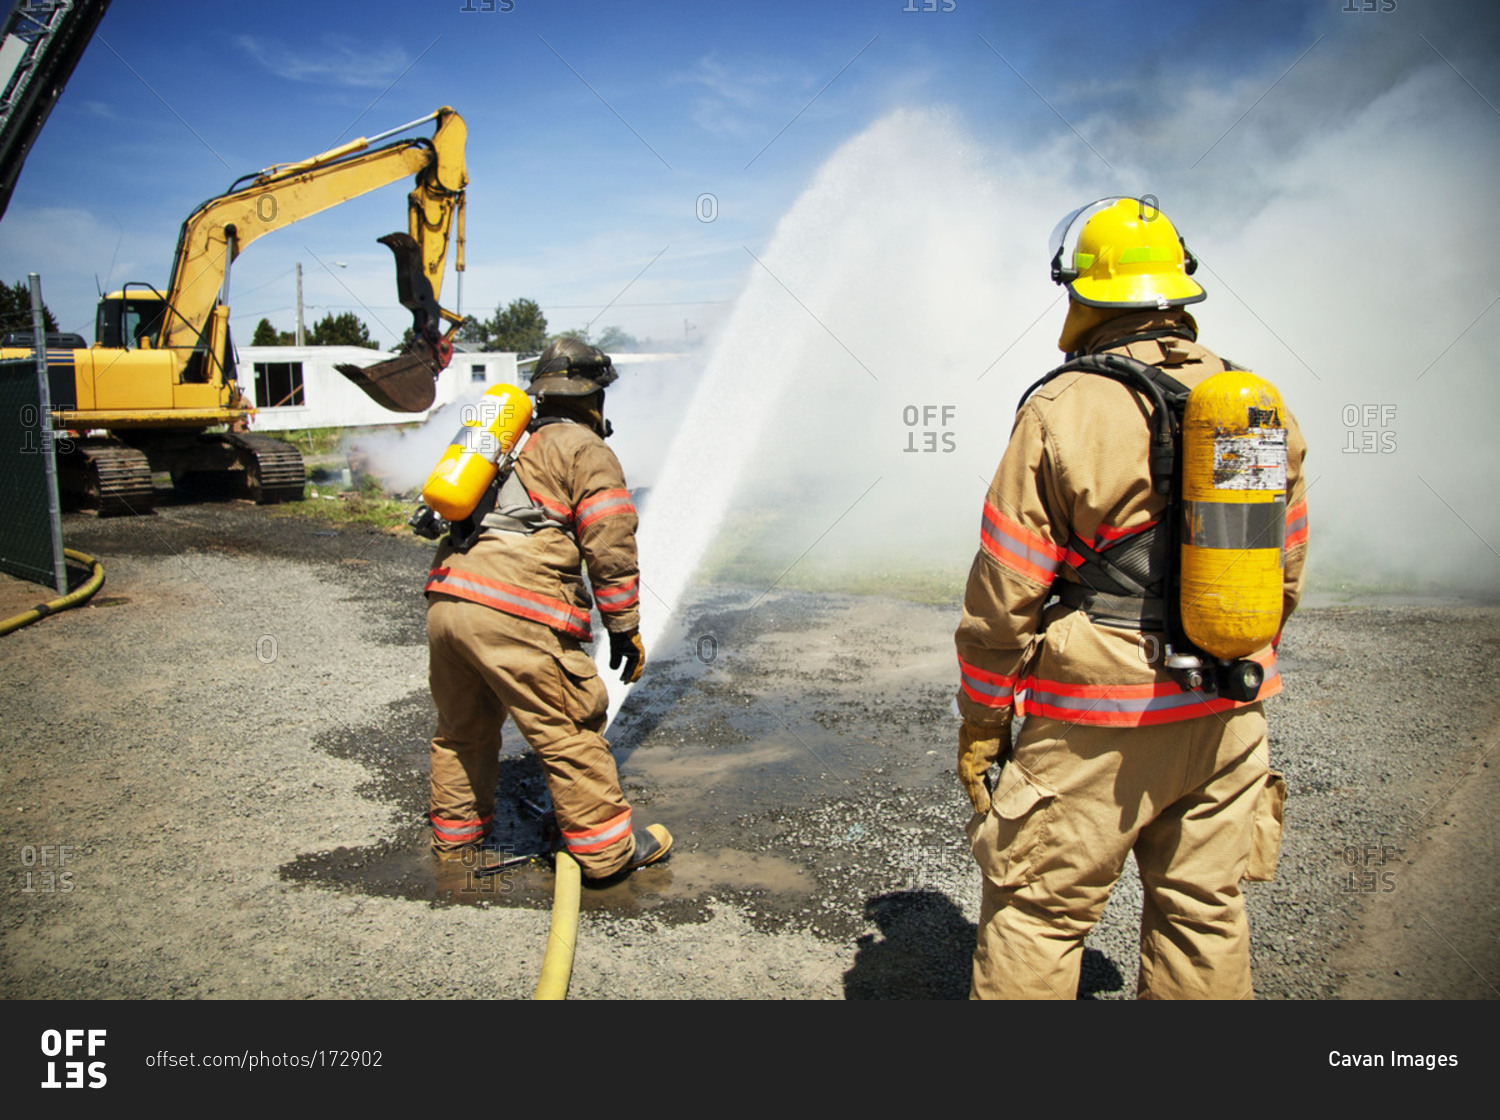 A fireman sprays water on a fire